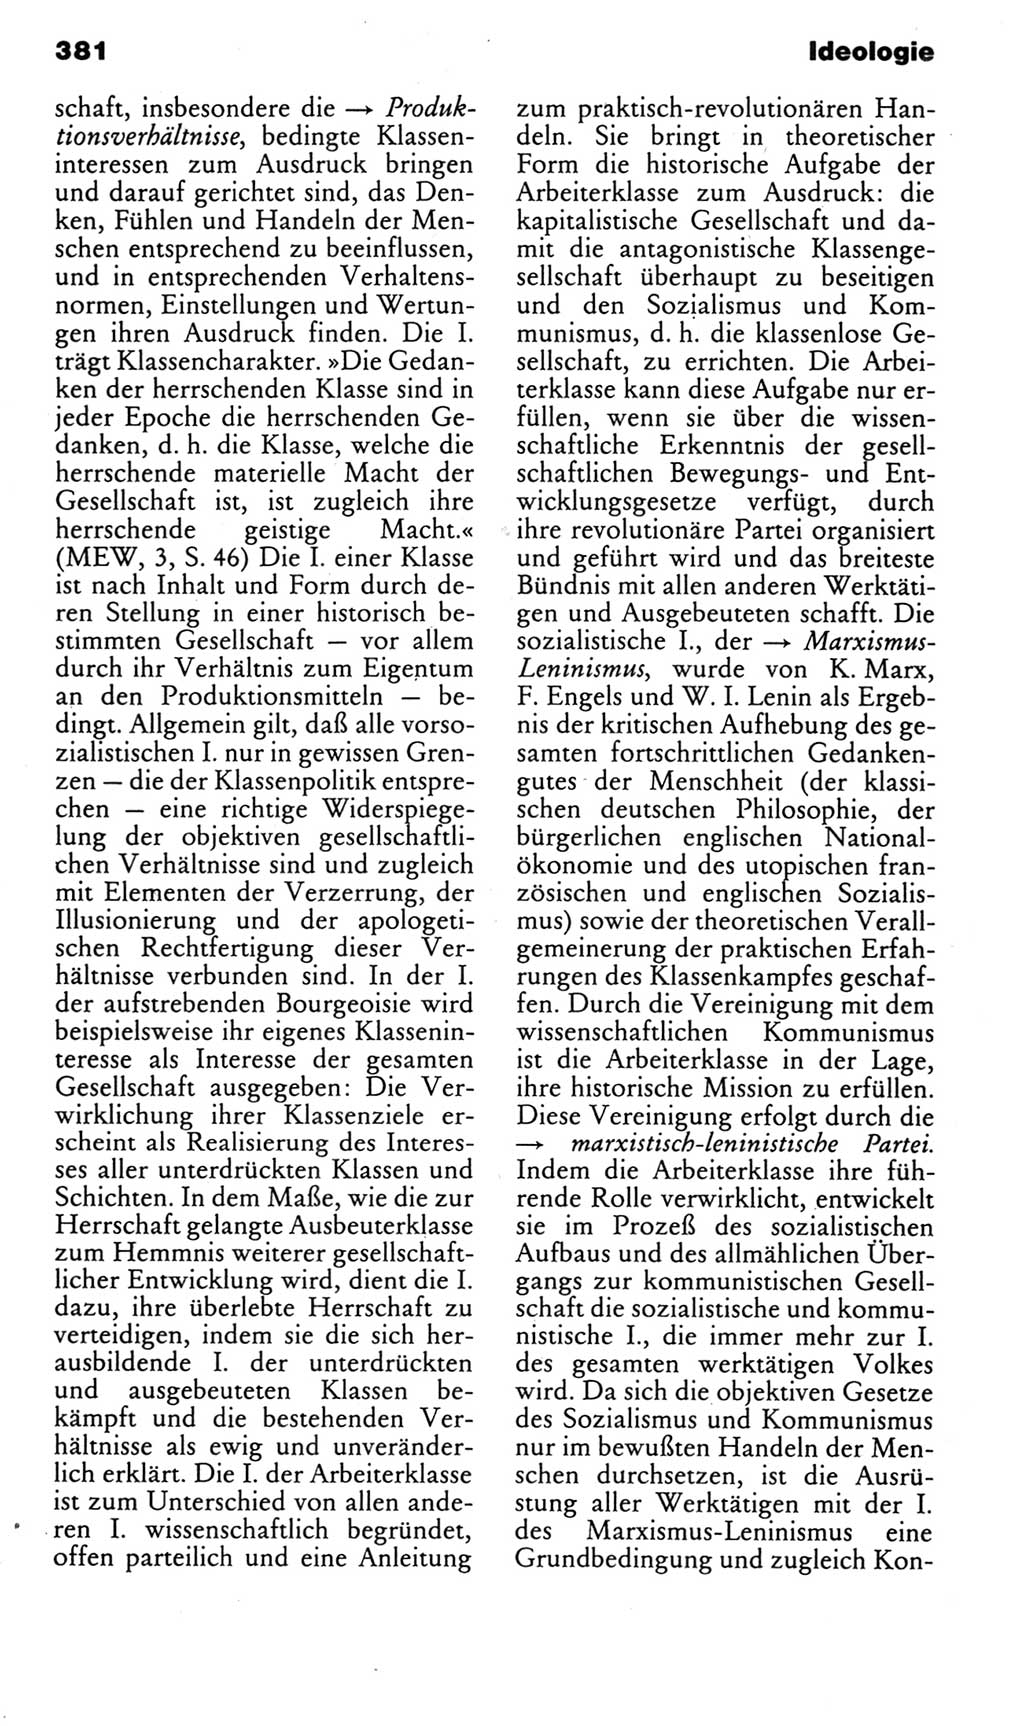 Kleines politisches Wörterbuch [Deutsche Demokratische Republik (DDR)] 1985, Seite 381 (Kl. pol. Wb. DDR 1985, S. 381)